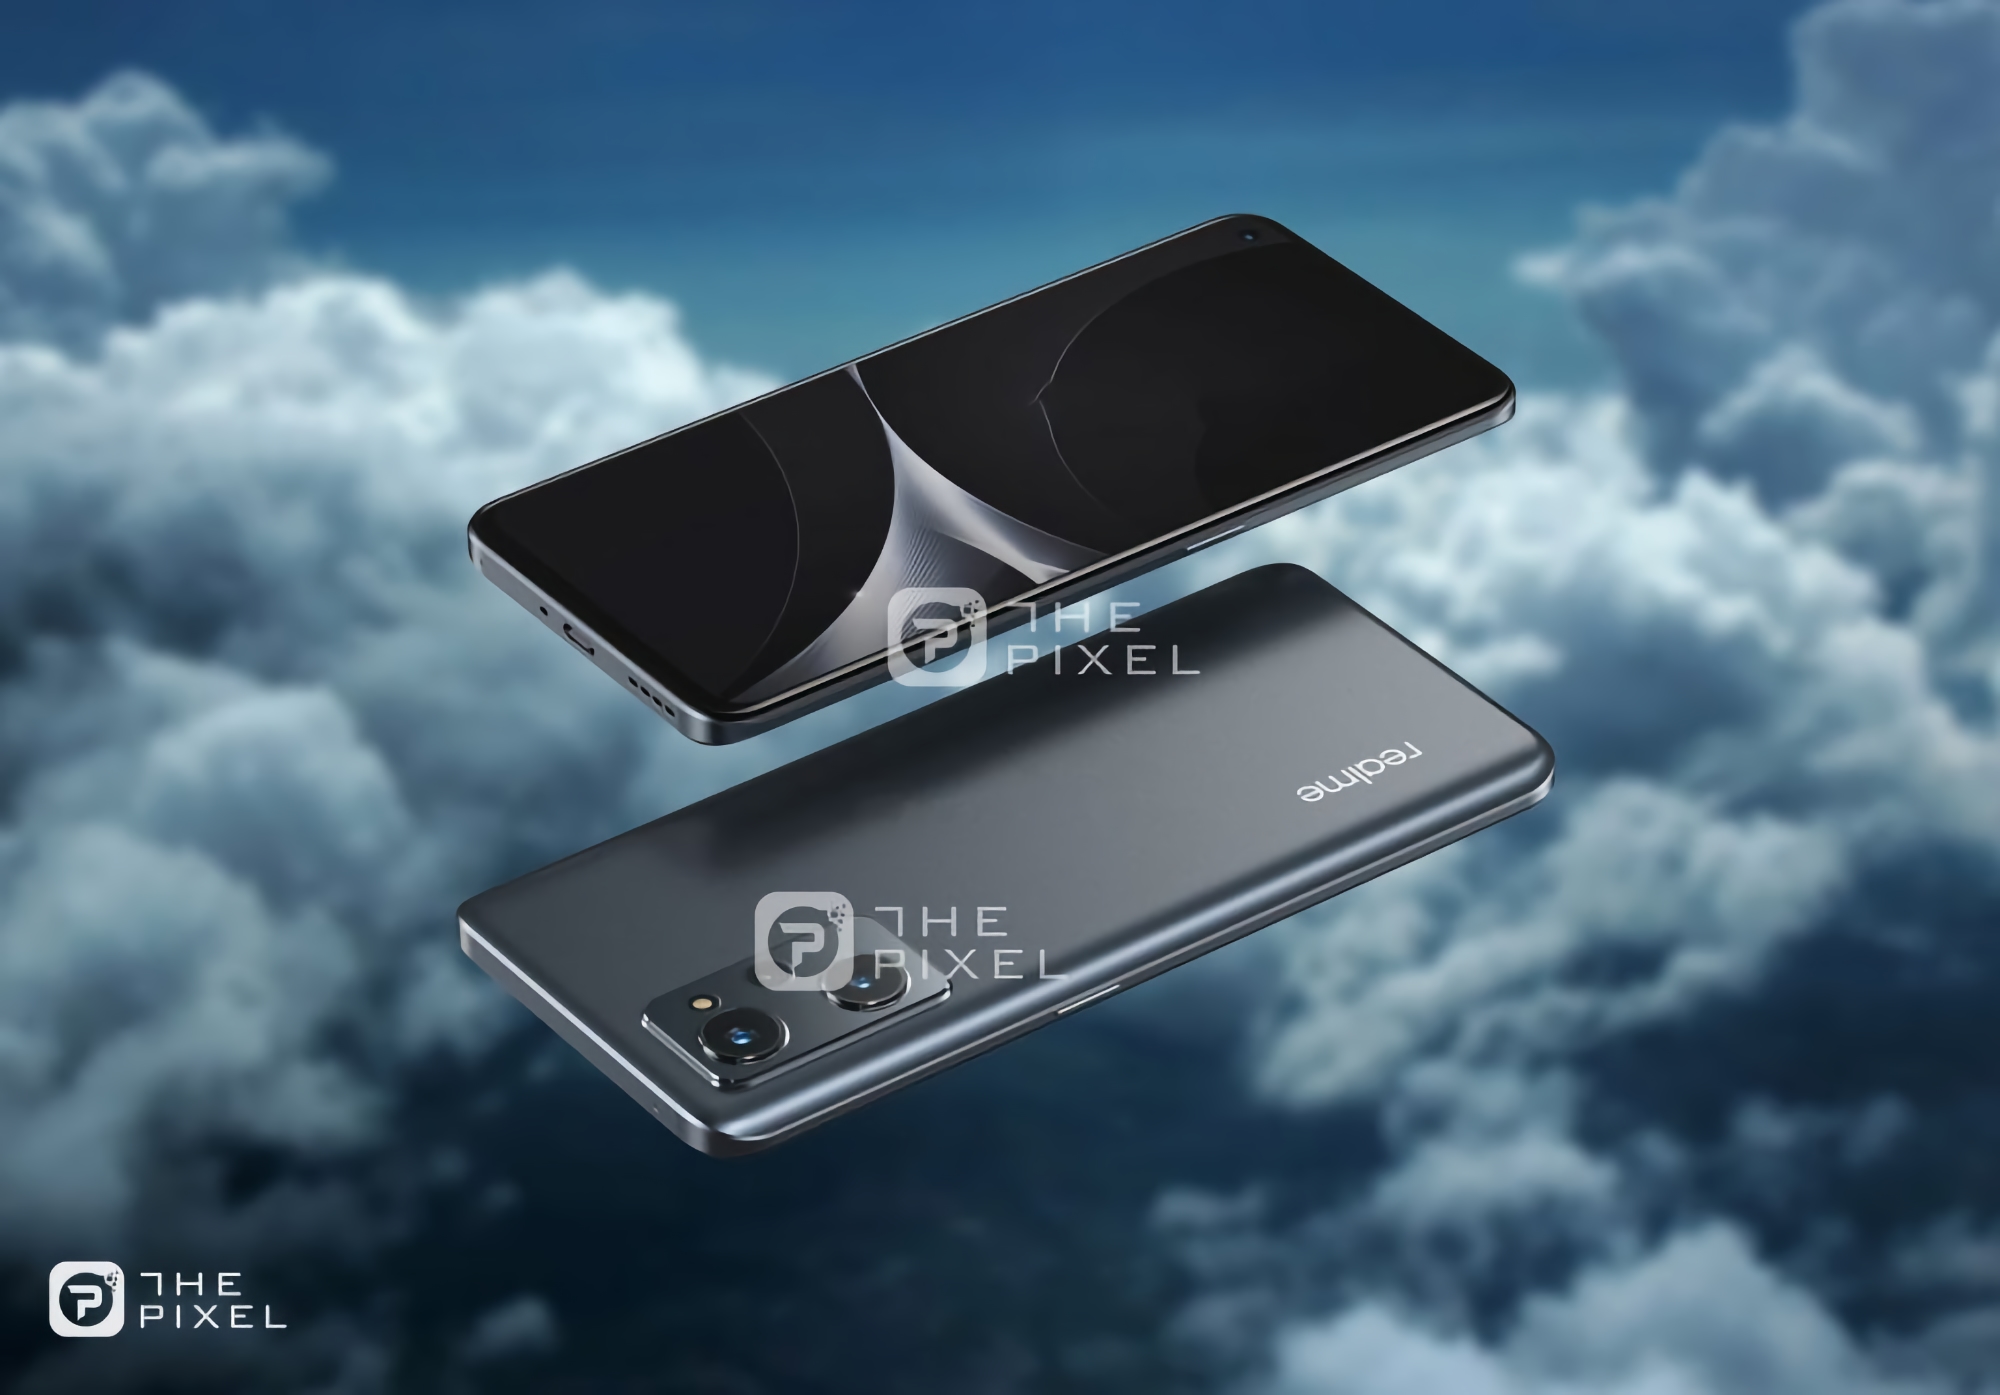 Imágenes de Realme 9i aparecieron en la red, el dispositivo será similar a OnePlus Nord 2 y Realme GT Neo 2